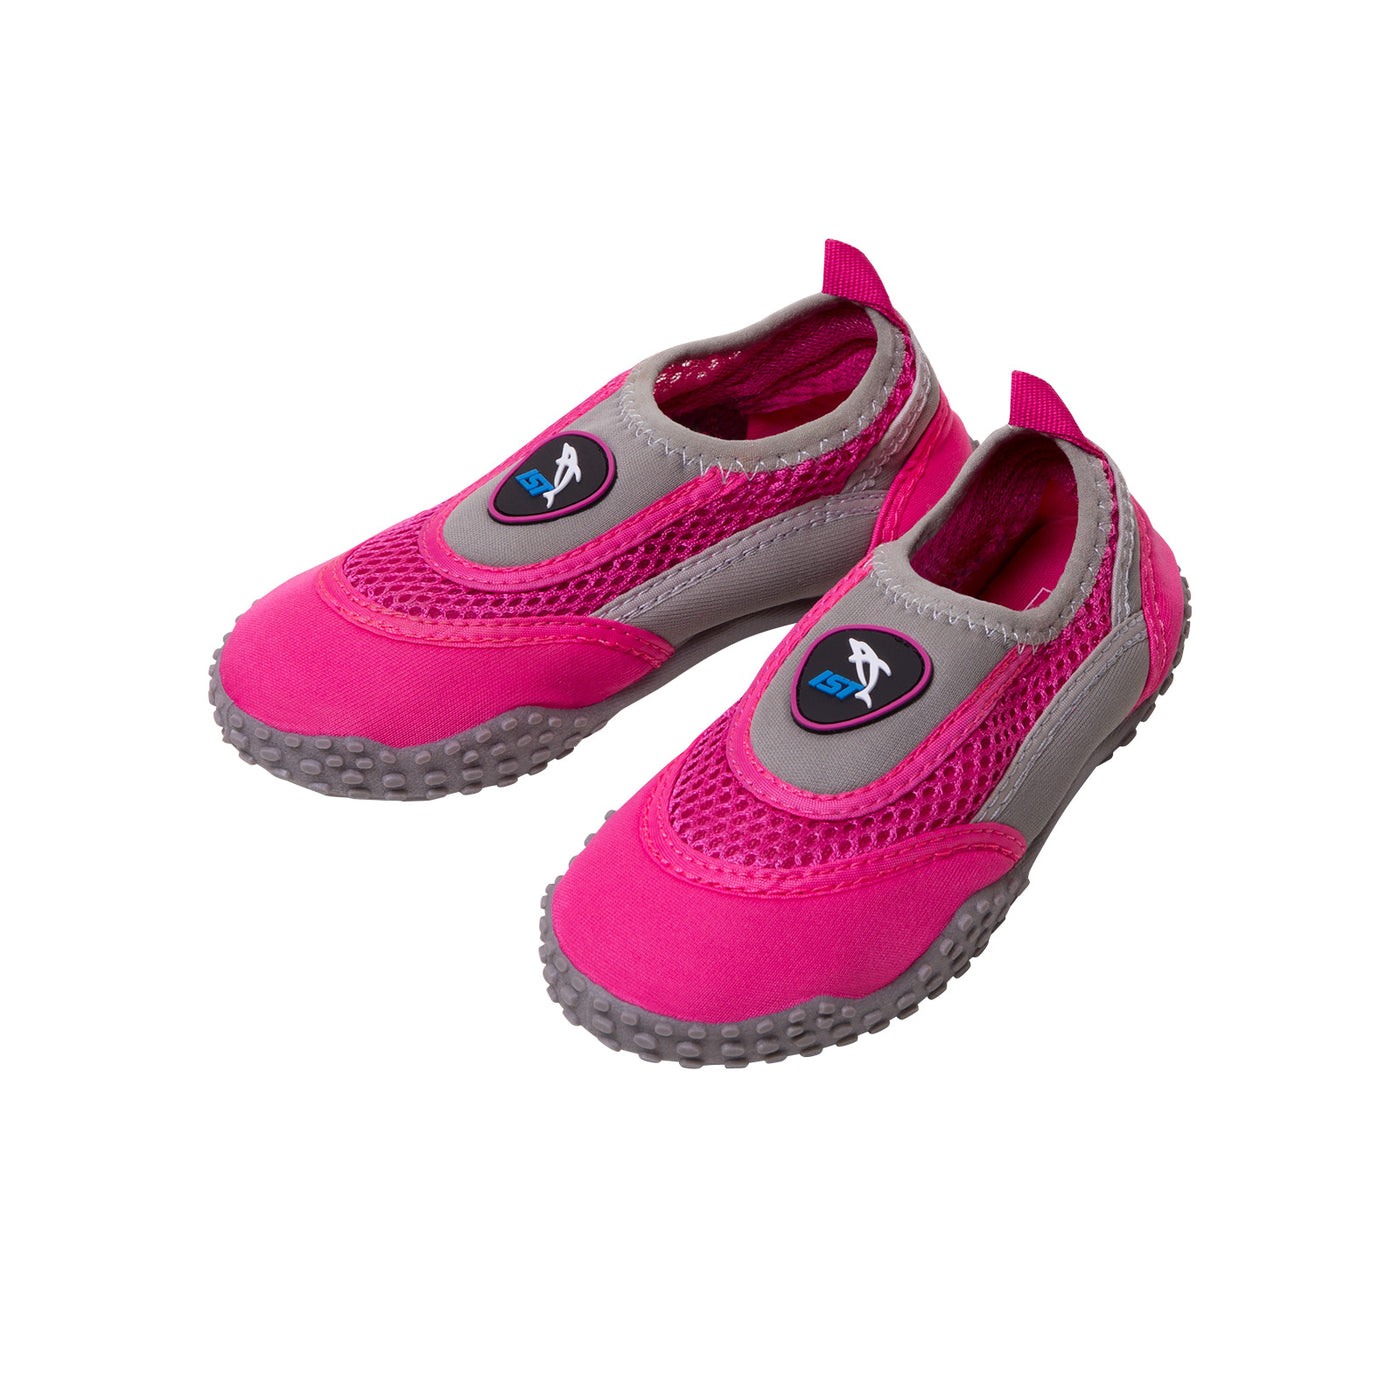 IST Aqua Shoes Kids and Adults – Shop709.com